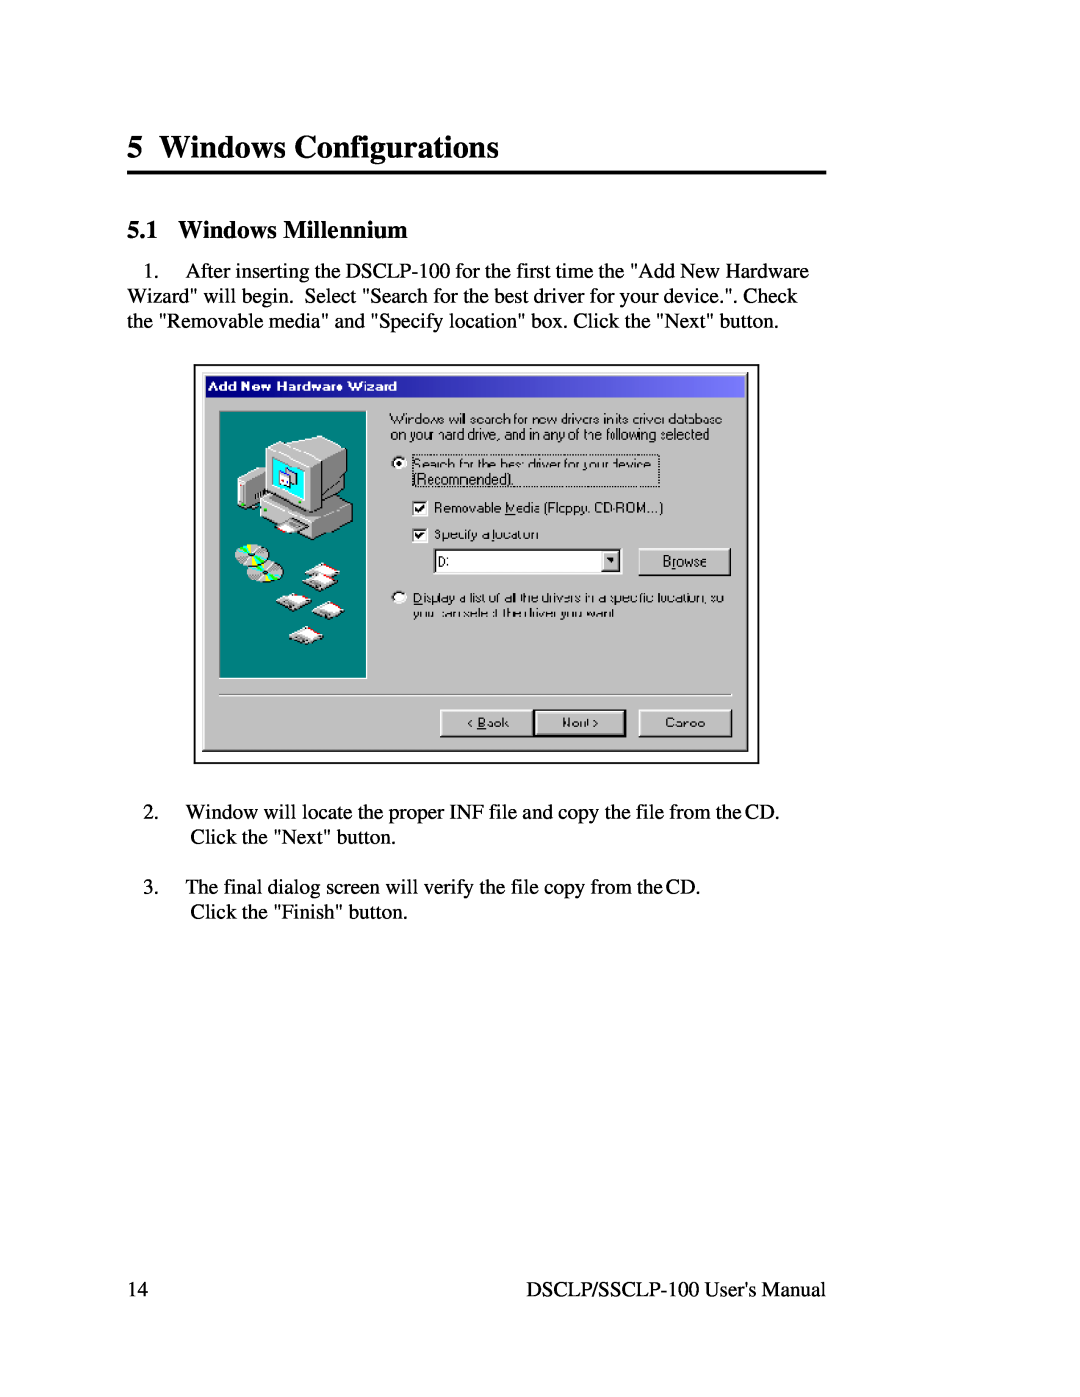 Quatech DSCLP/SSCLP-100 user manual Windows Configurations, Windows Millennium 